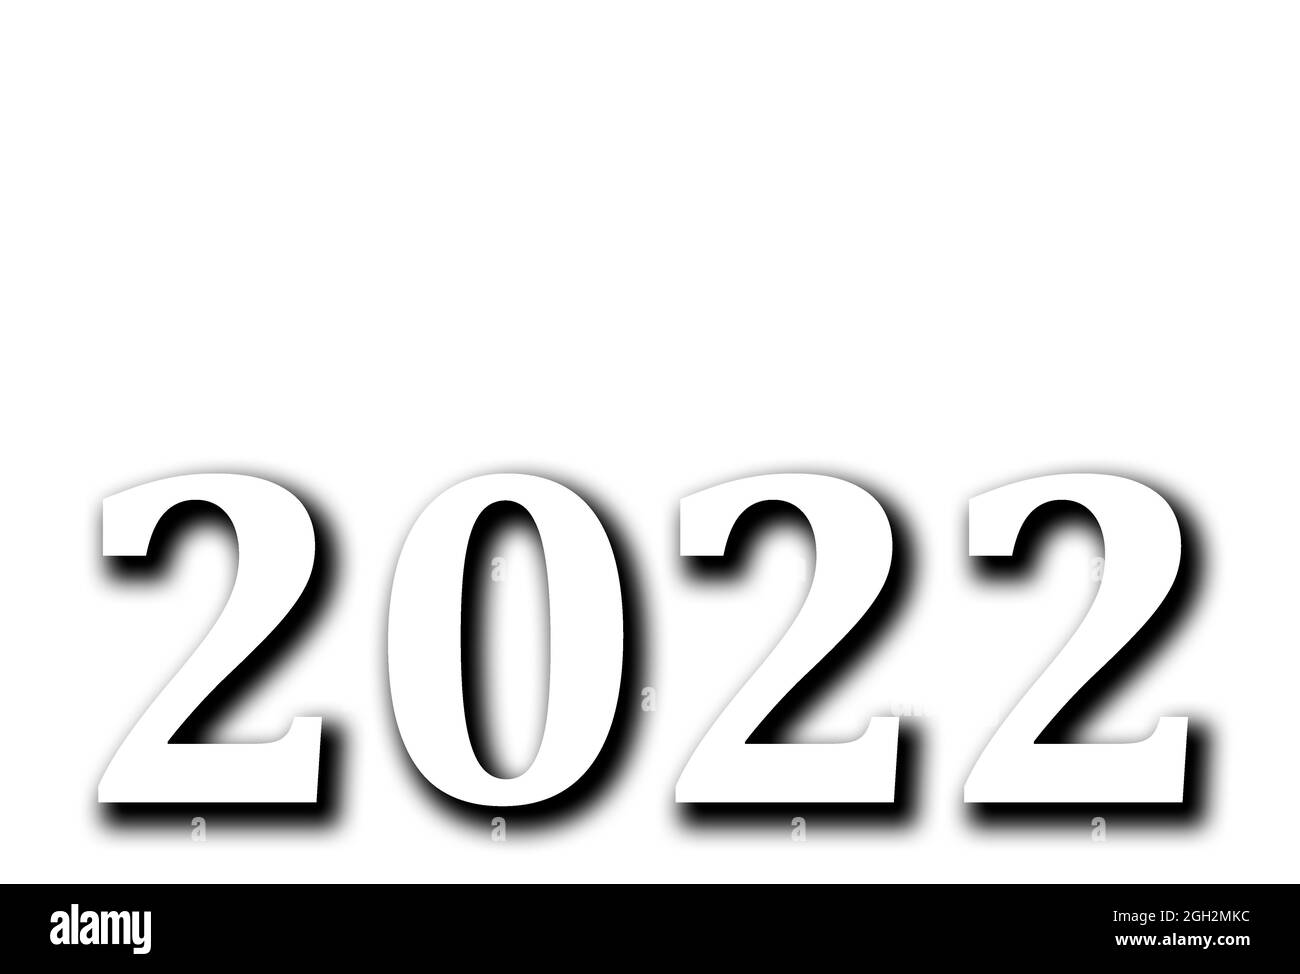 Frohes neues Jahr 2022 Text-Design. Business Tagebuch Cover für 2022 mit Wünschen. Designvorlage für Broschüre, Karte, Poster. Vektorgrafik. Stockfoto